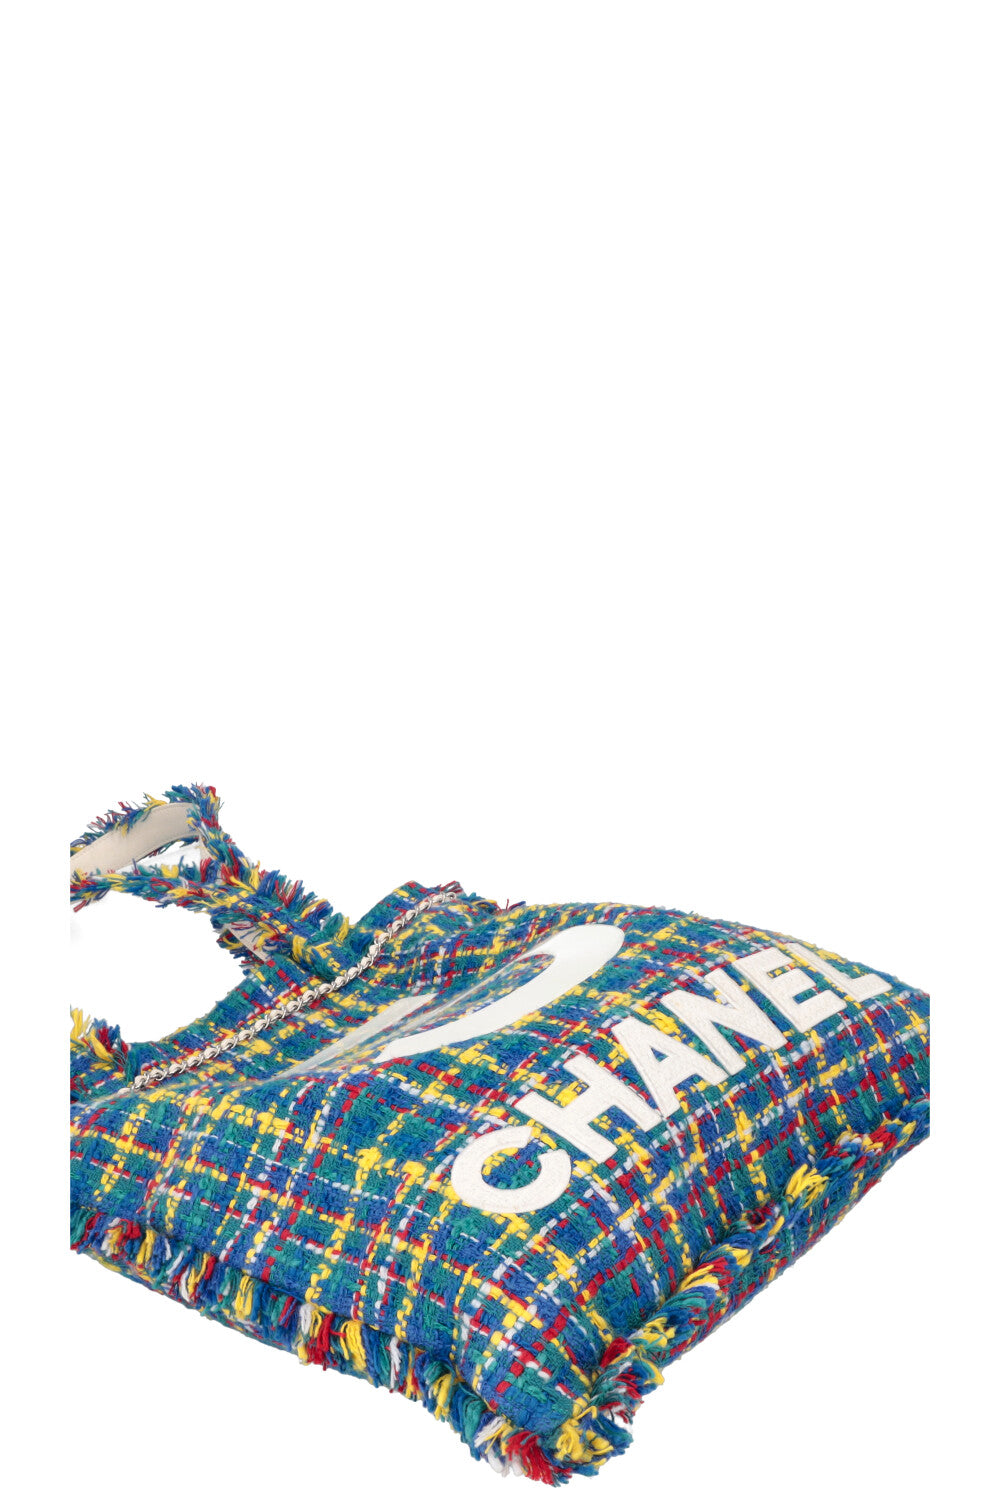 CHANEL Tweed No 5 Tote Bag Blue